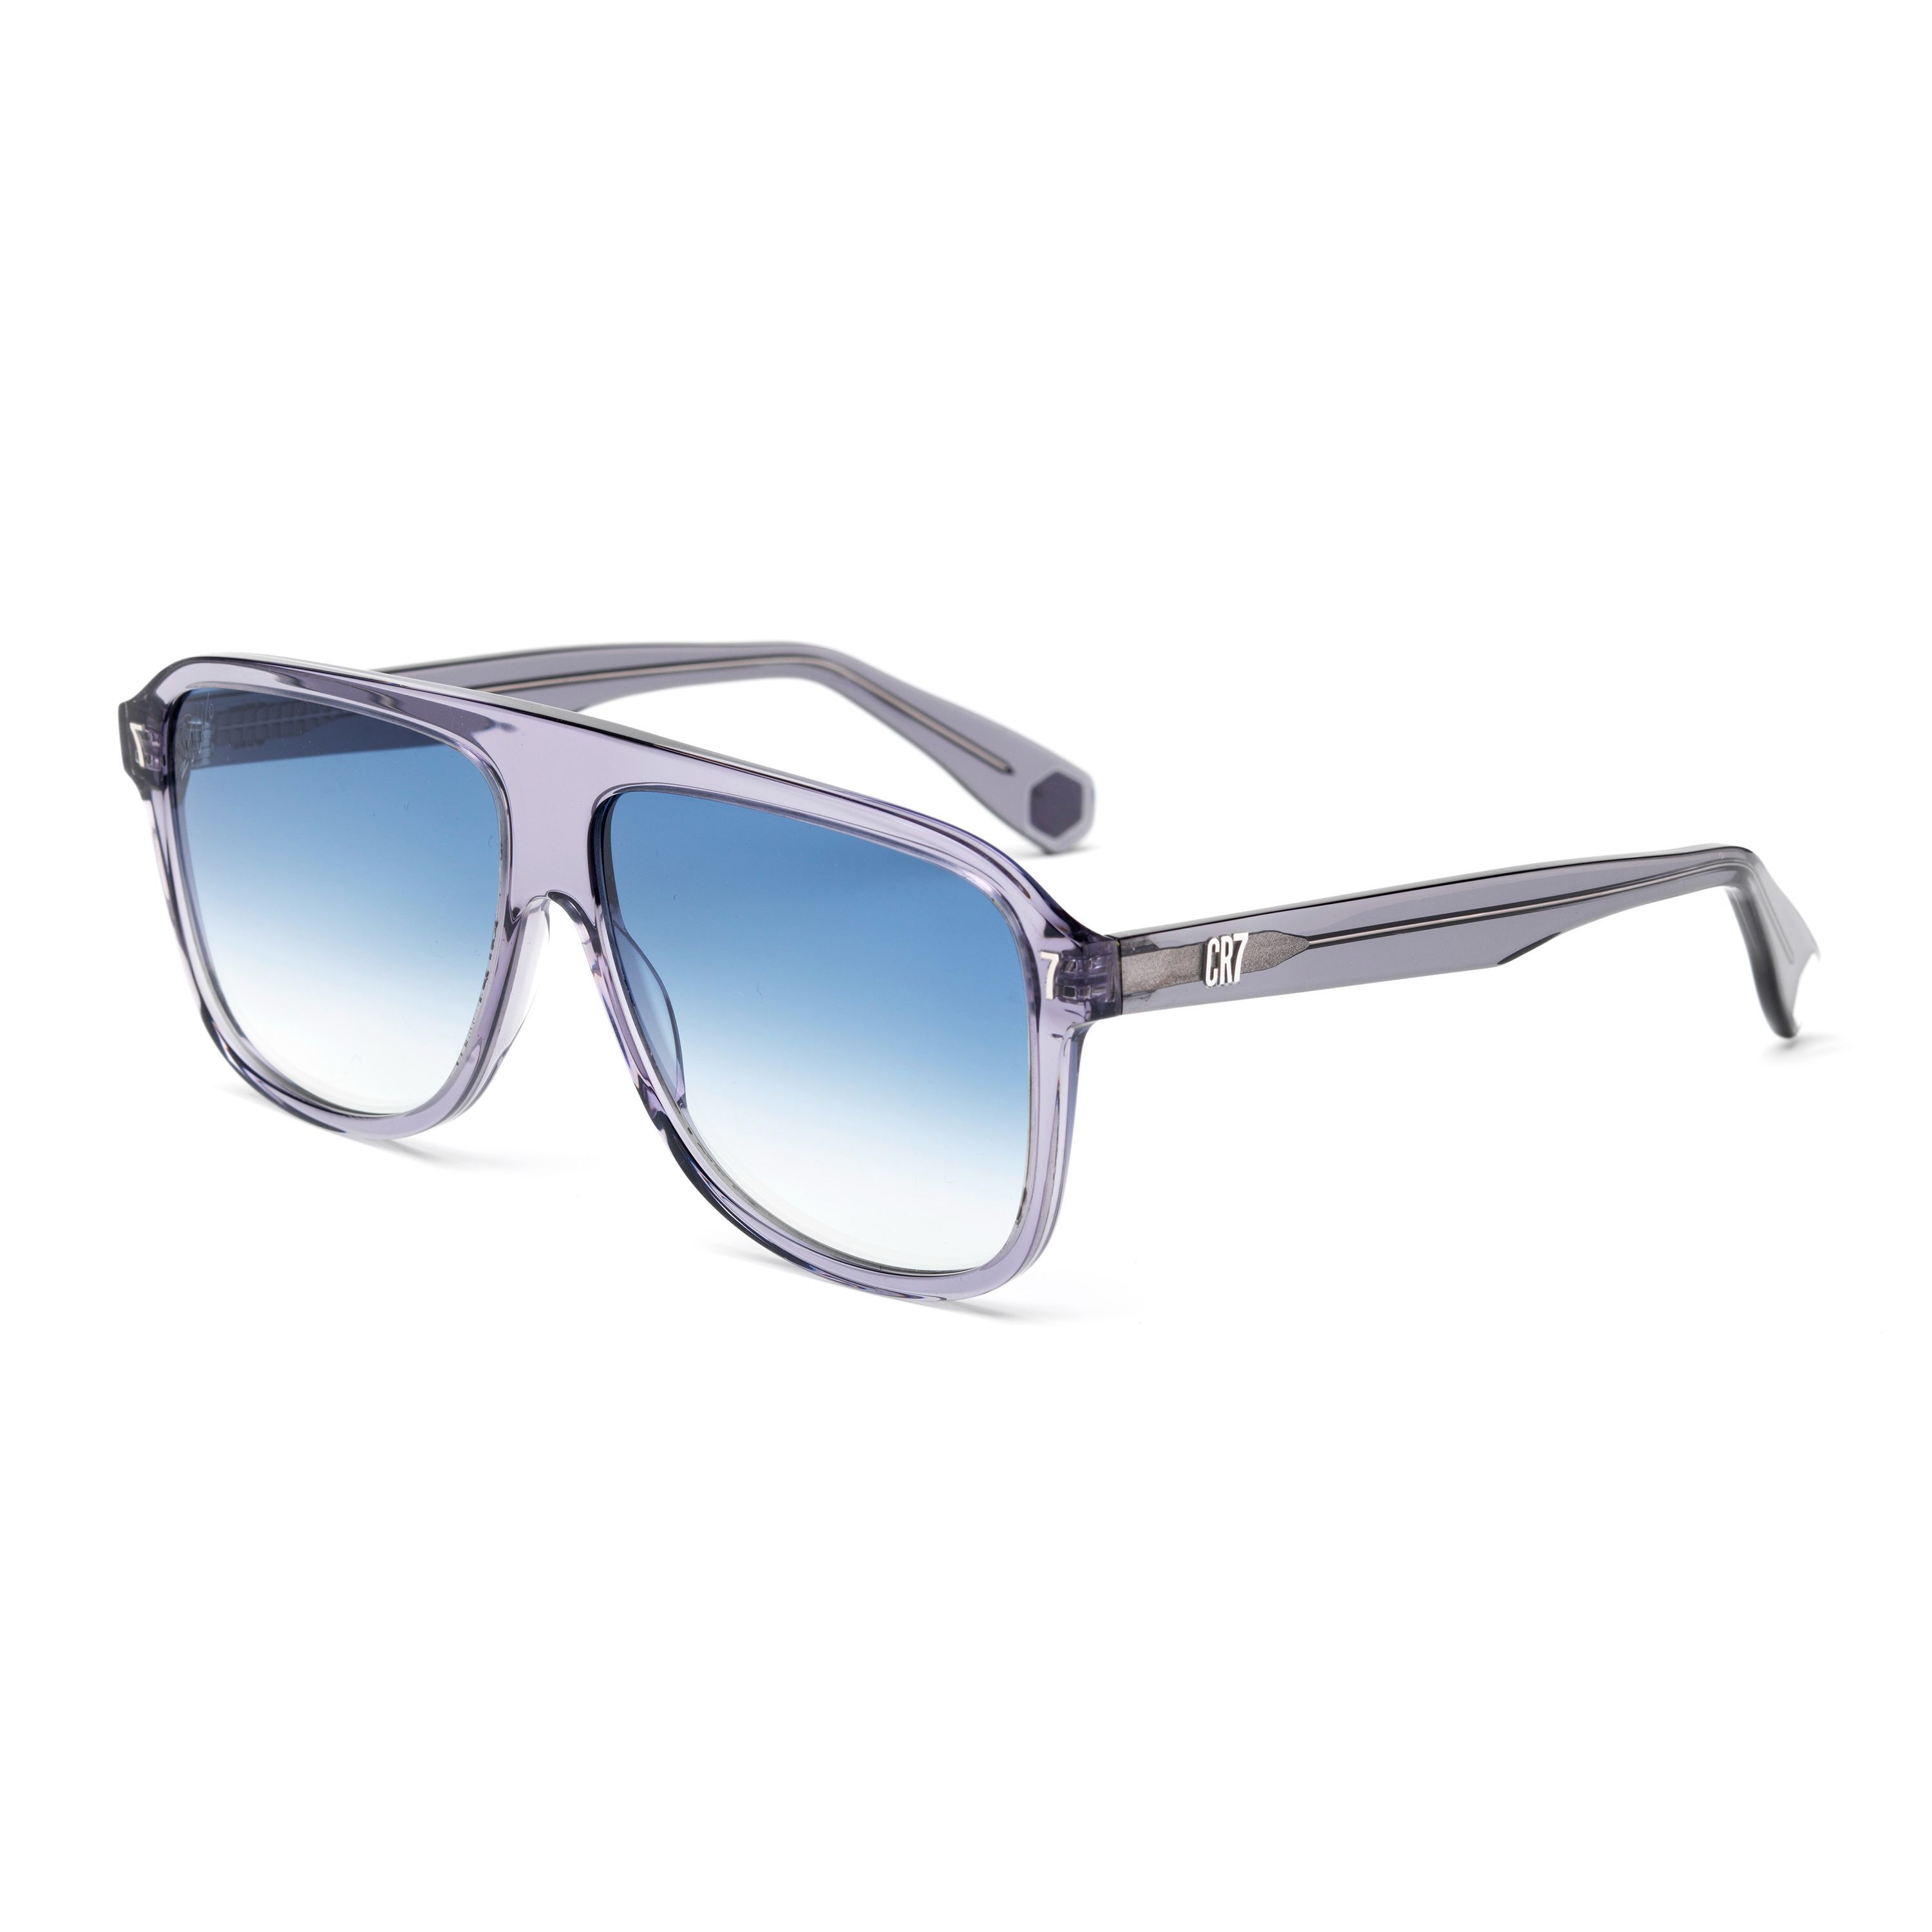 BD002 Pilot Sunglasses 71 - size 59